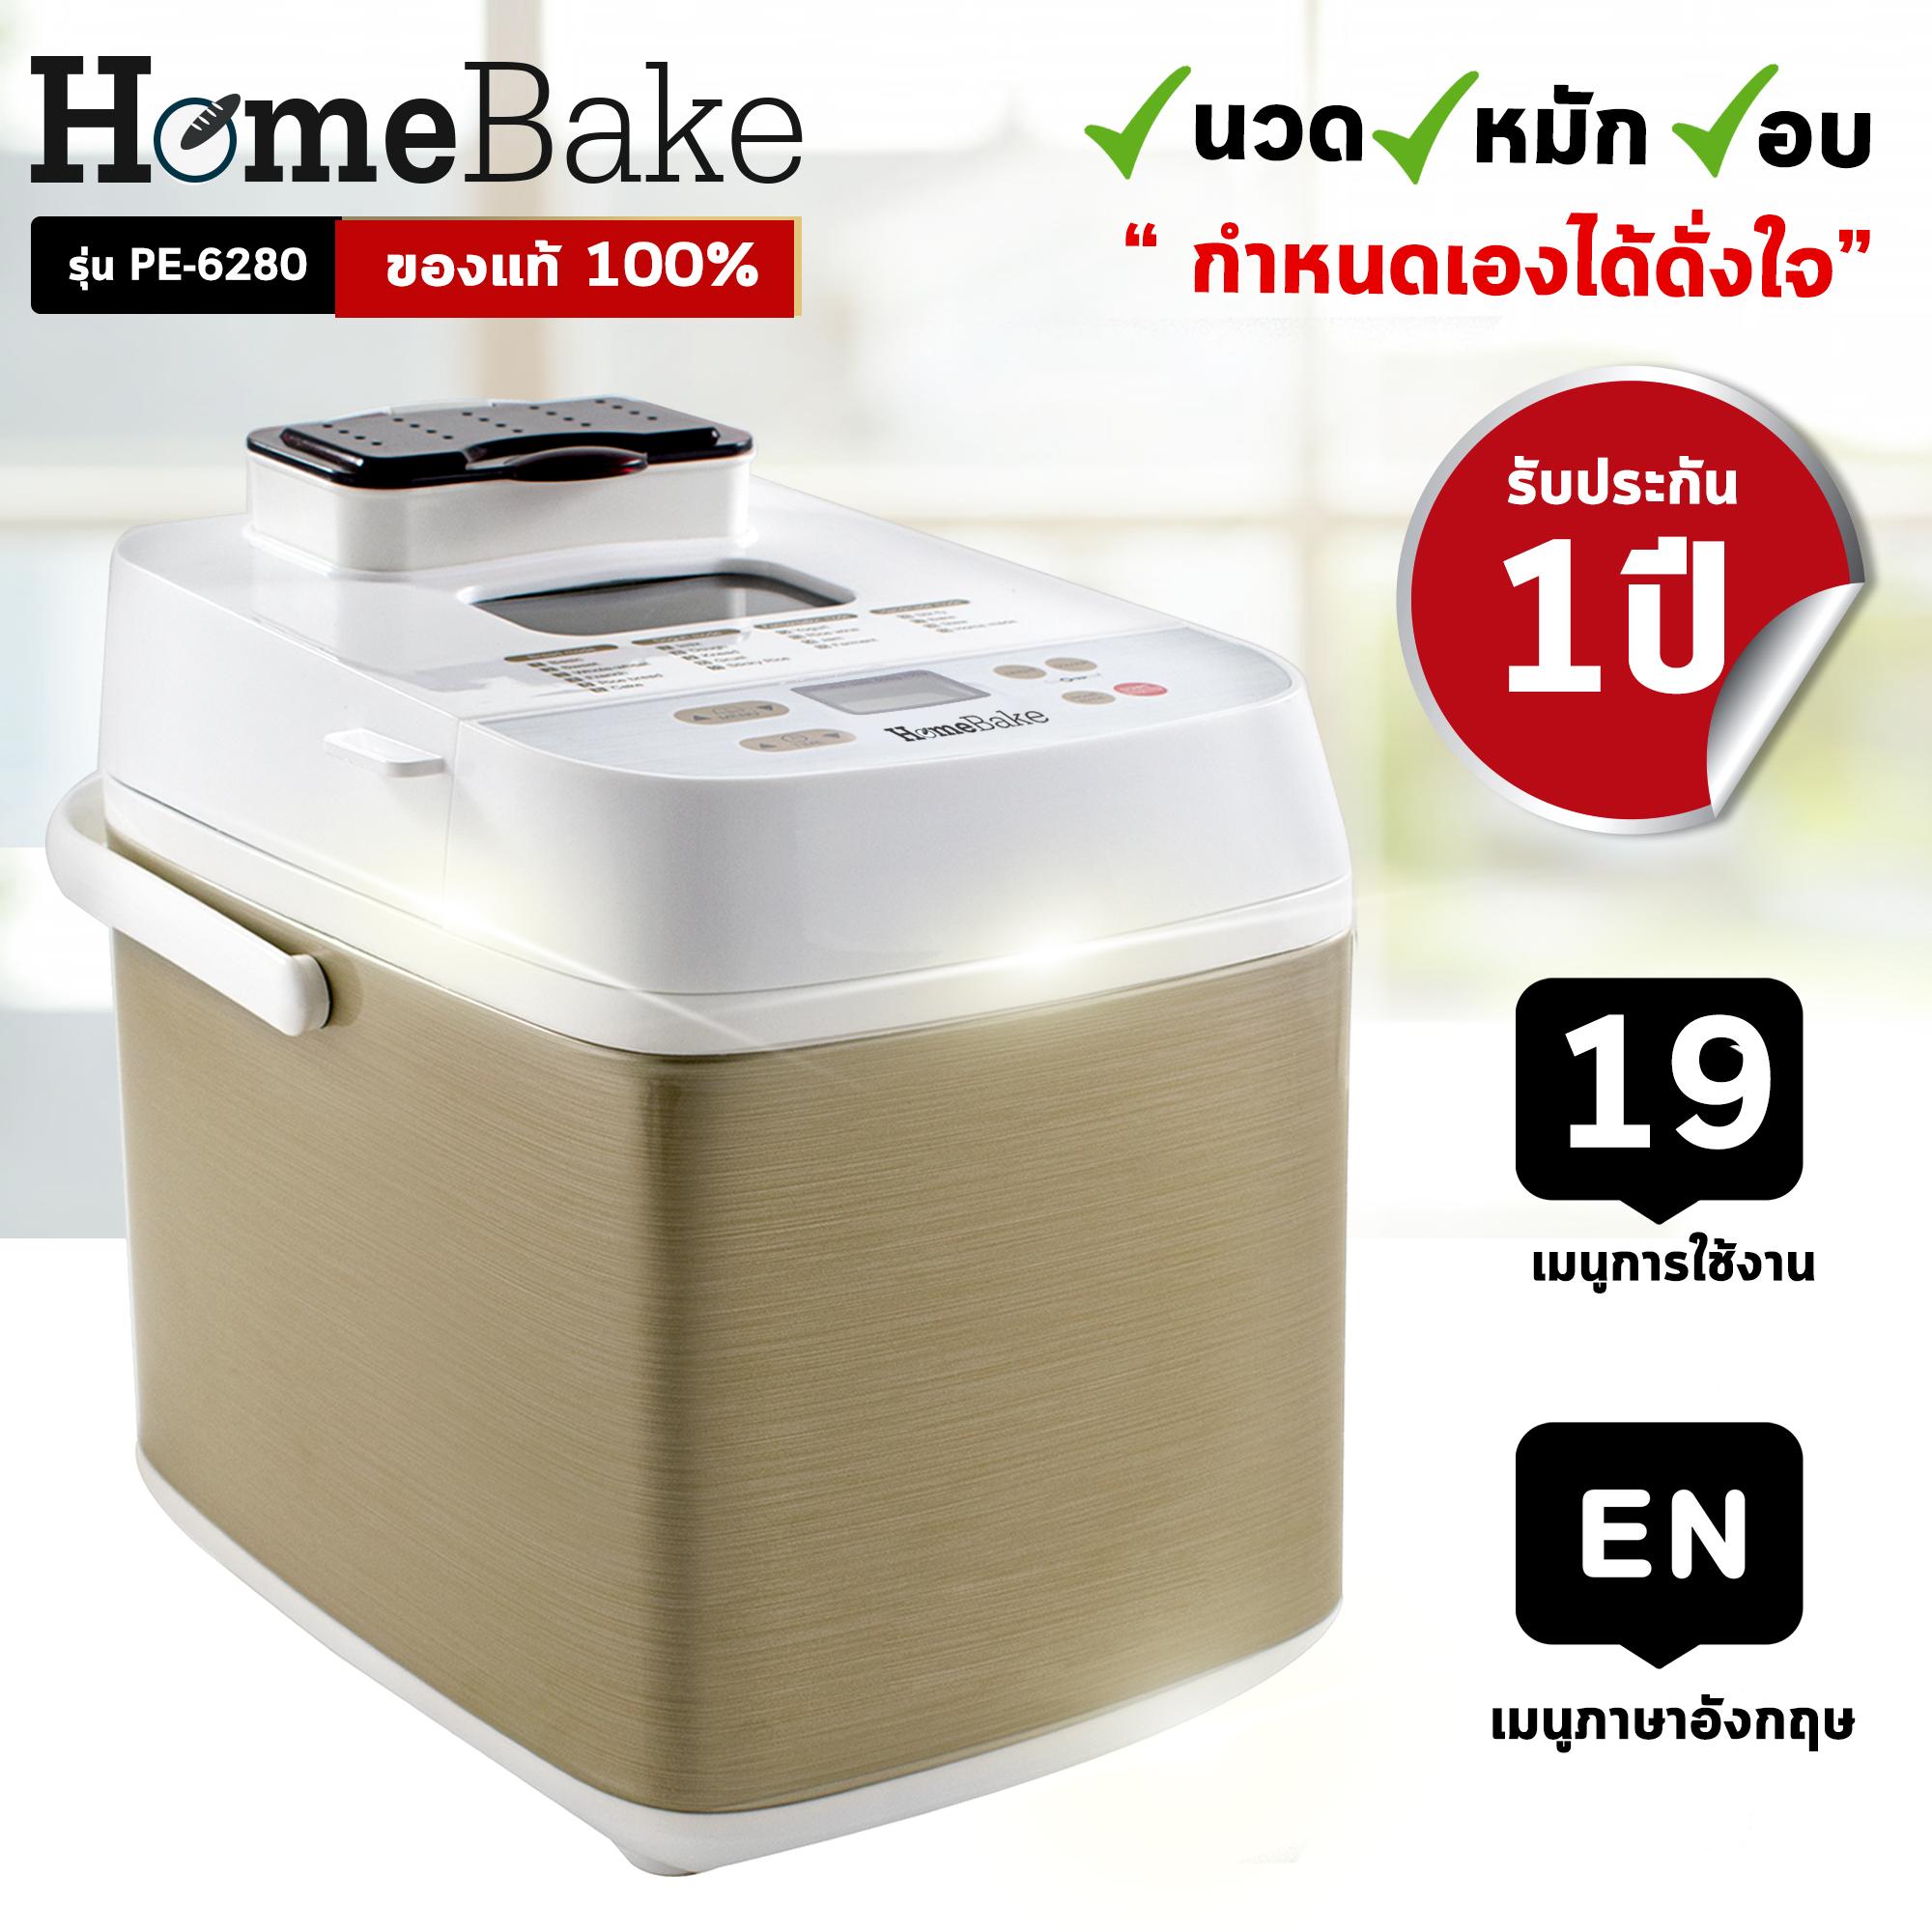 เครื่องทำขนมปังอเนกประสงค์ Home Bake รุ่น PE6280